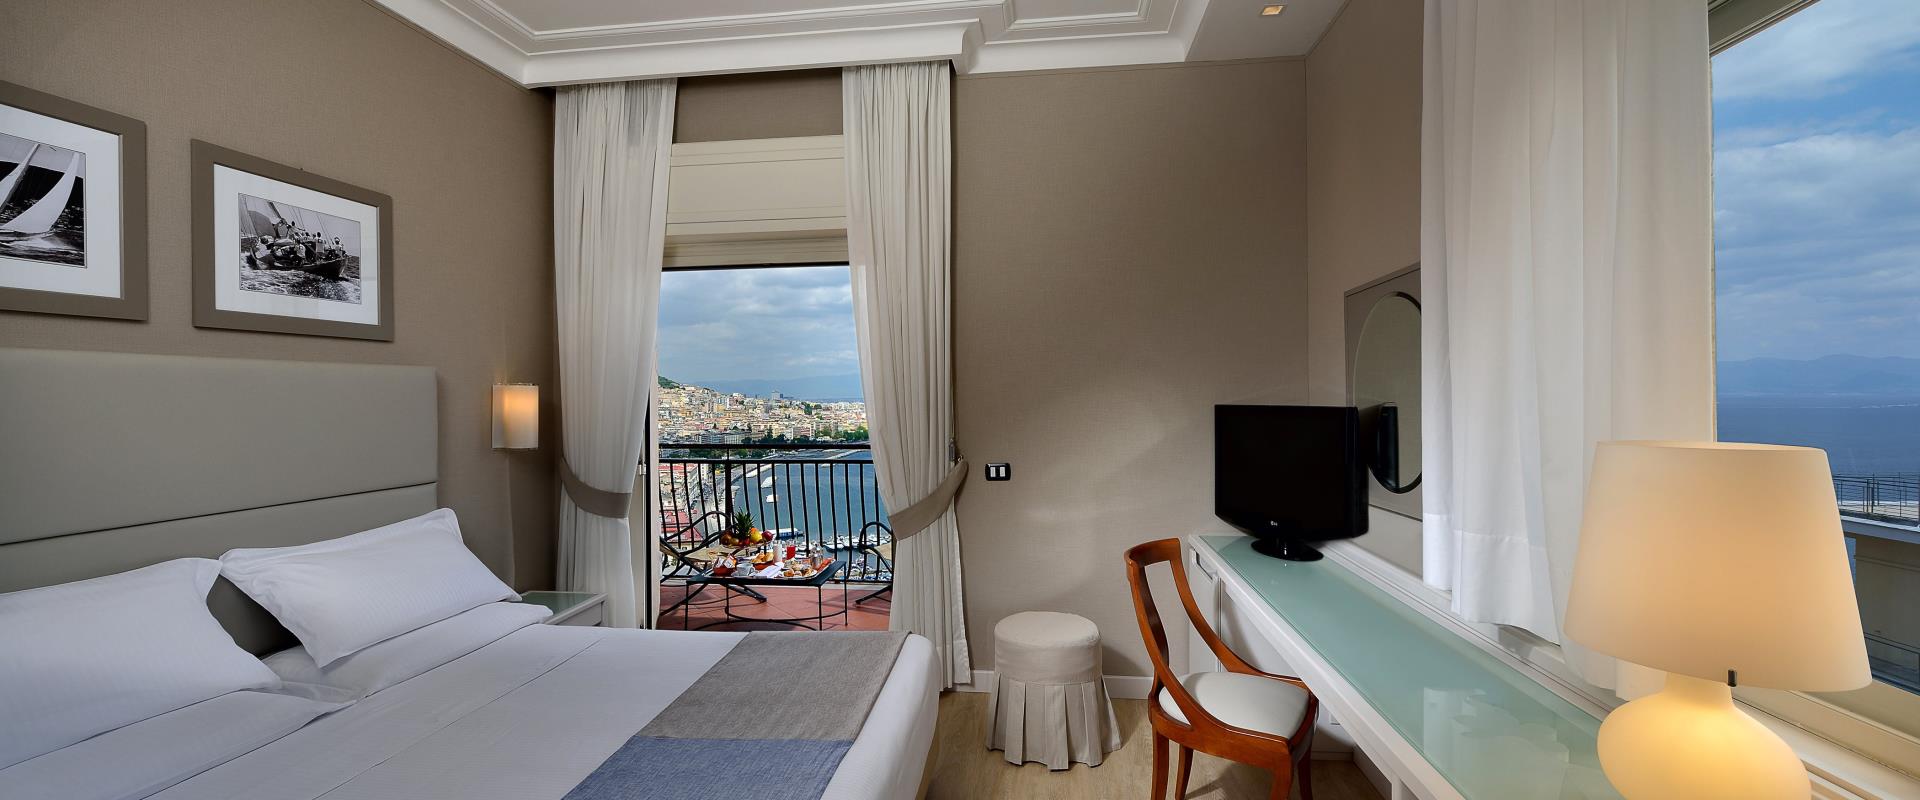 Habitación Doble con vistas al mar al otro lado del golfo de Nápoles - Hotel Paradiso Naples